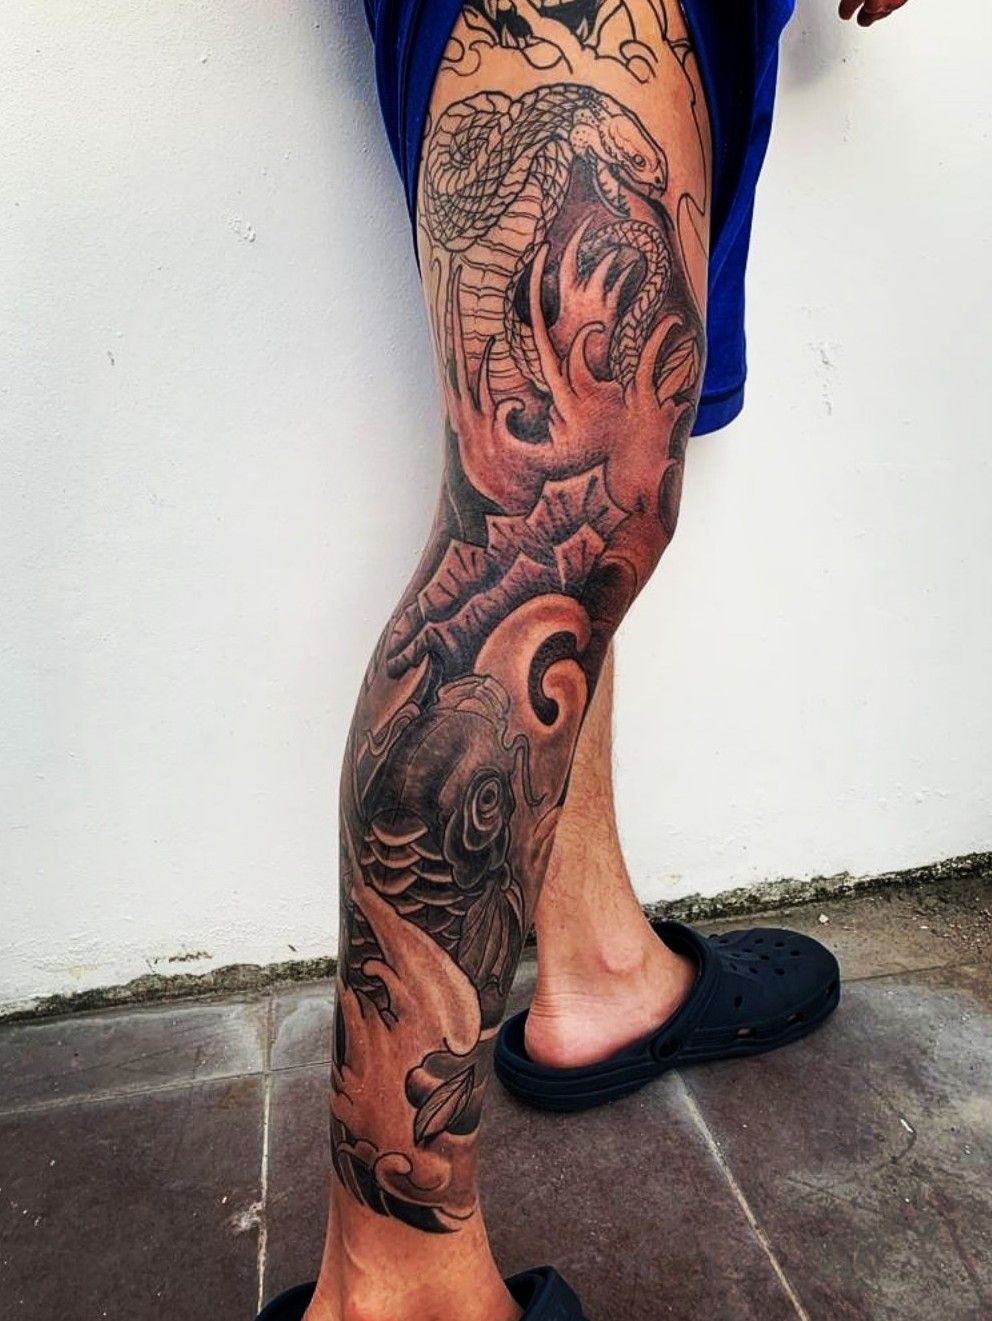 Areeisboujee  Sleeve tattoos Cool forearm tattoos Half sleeve tattoos  designs